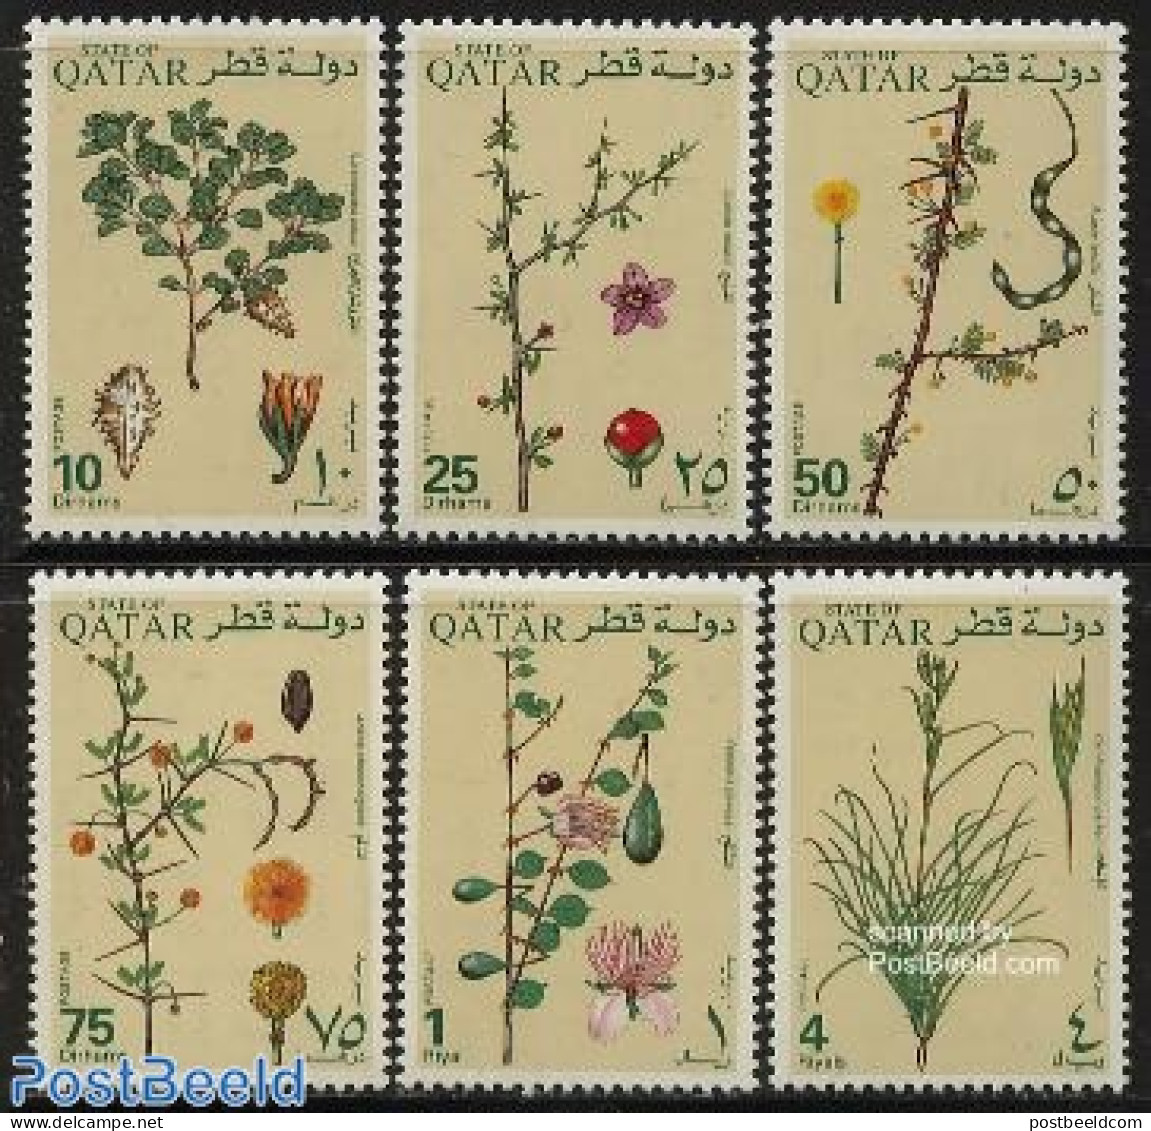 Qatar 1991 Flora 6v, Mint NH, Nature - Flowers & Plants - Qatar